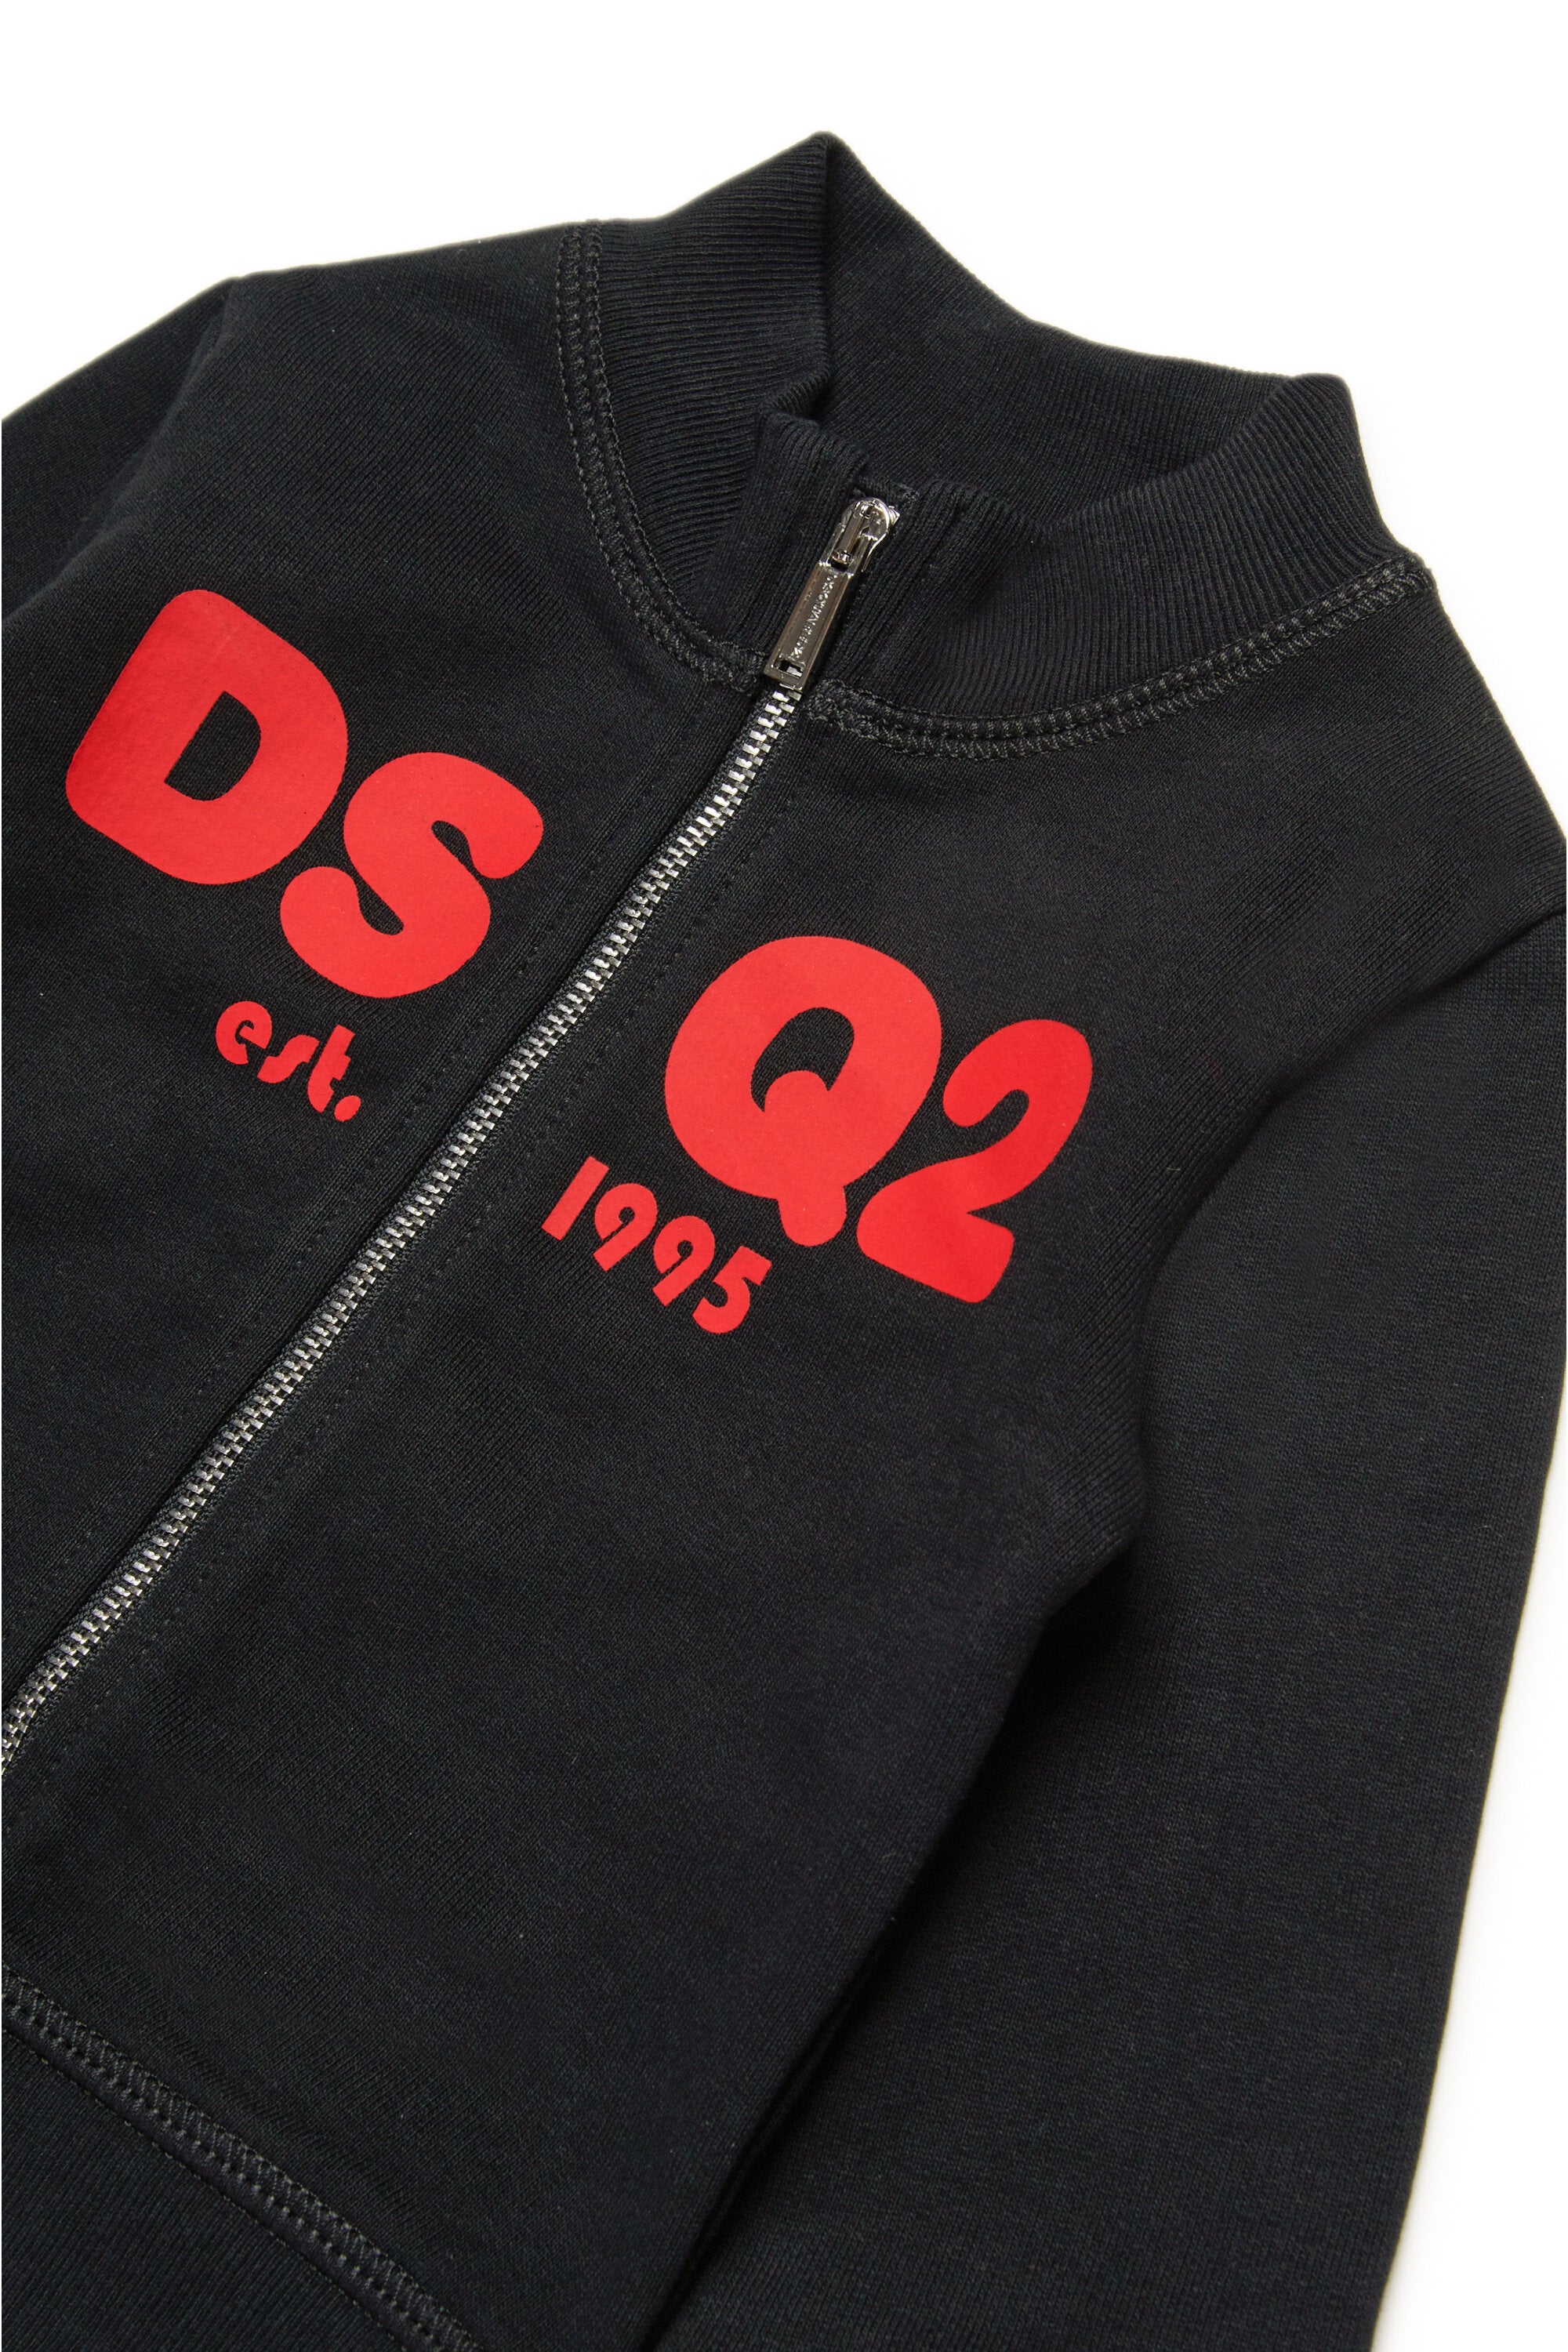 Sweatshirt with zip and logo DSQ2 est.1995